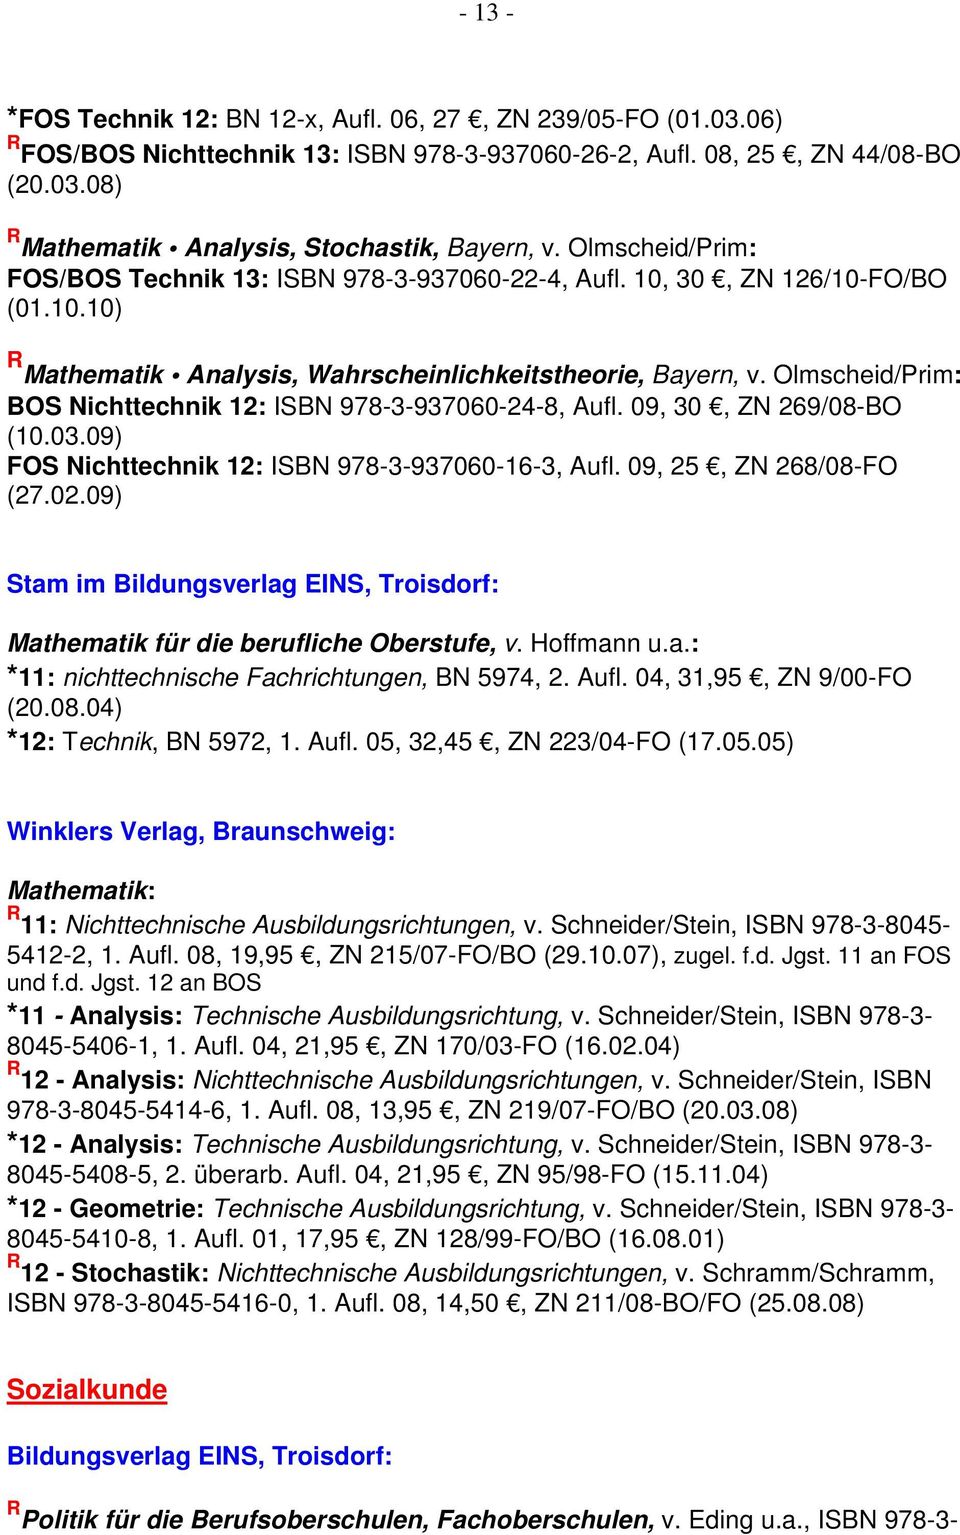 Olmscheid/Prim: BOS Nichttechnik 12: ISBN 978-3-937060-24-8, Aufl. 09, 30, ZN 269/08-BO (10.03.09) FOS Nichttechnik 12: ISBN 978-3-937060-16-3, Aufl. 09, 25, ZN 268/08-FO (27.02.